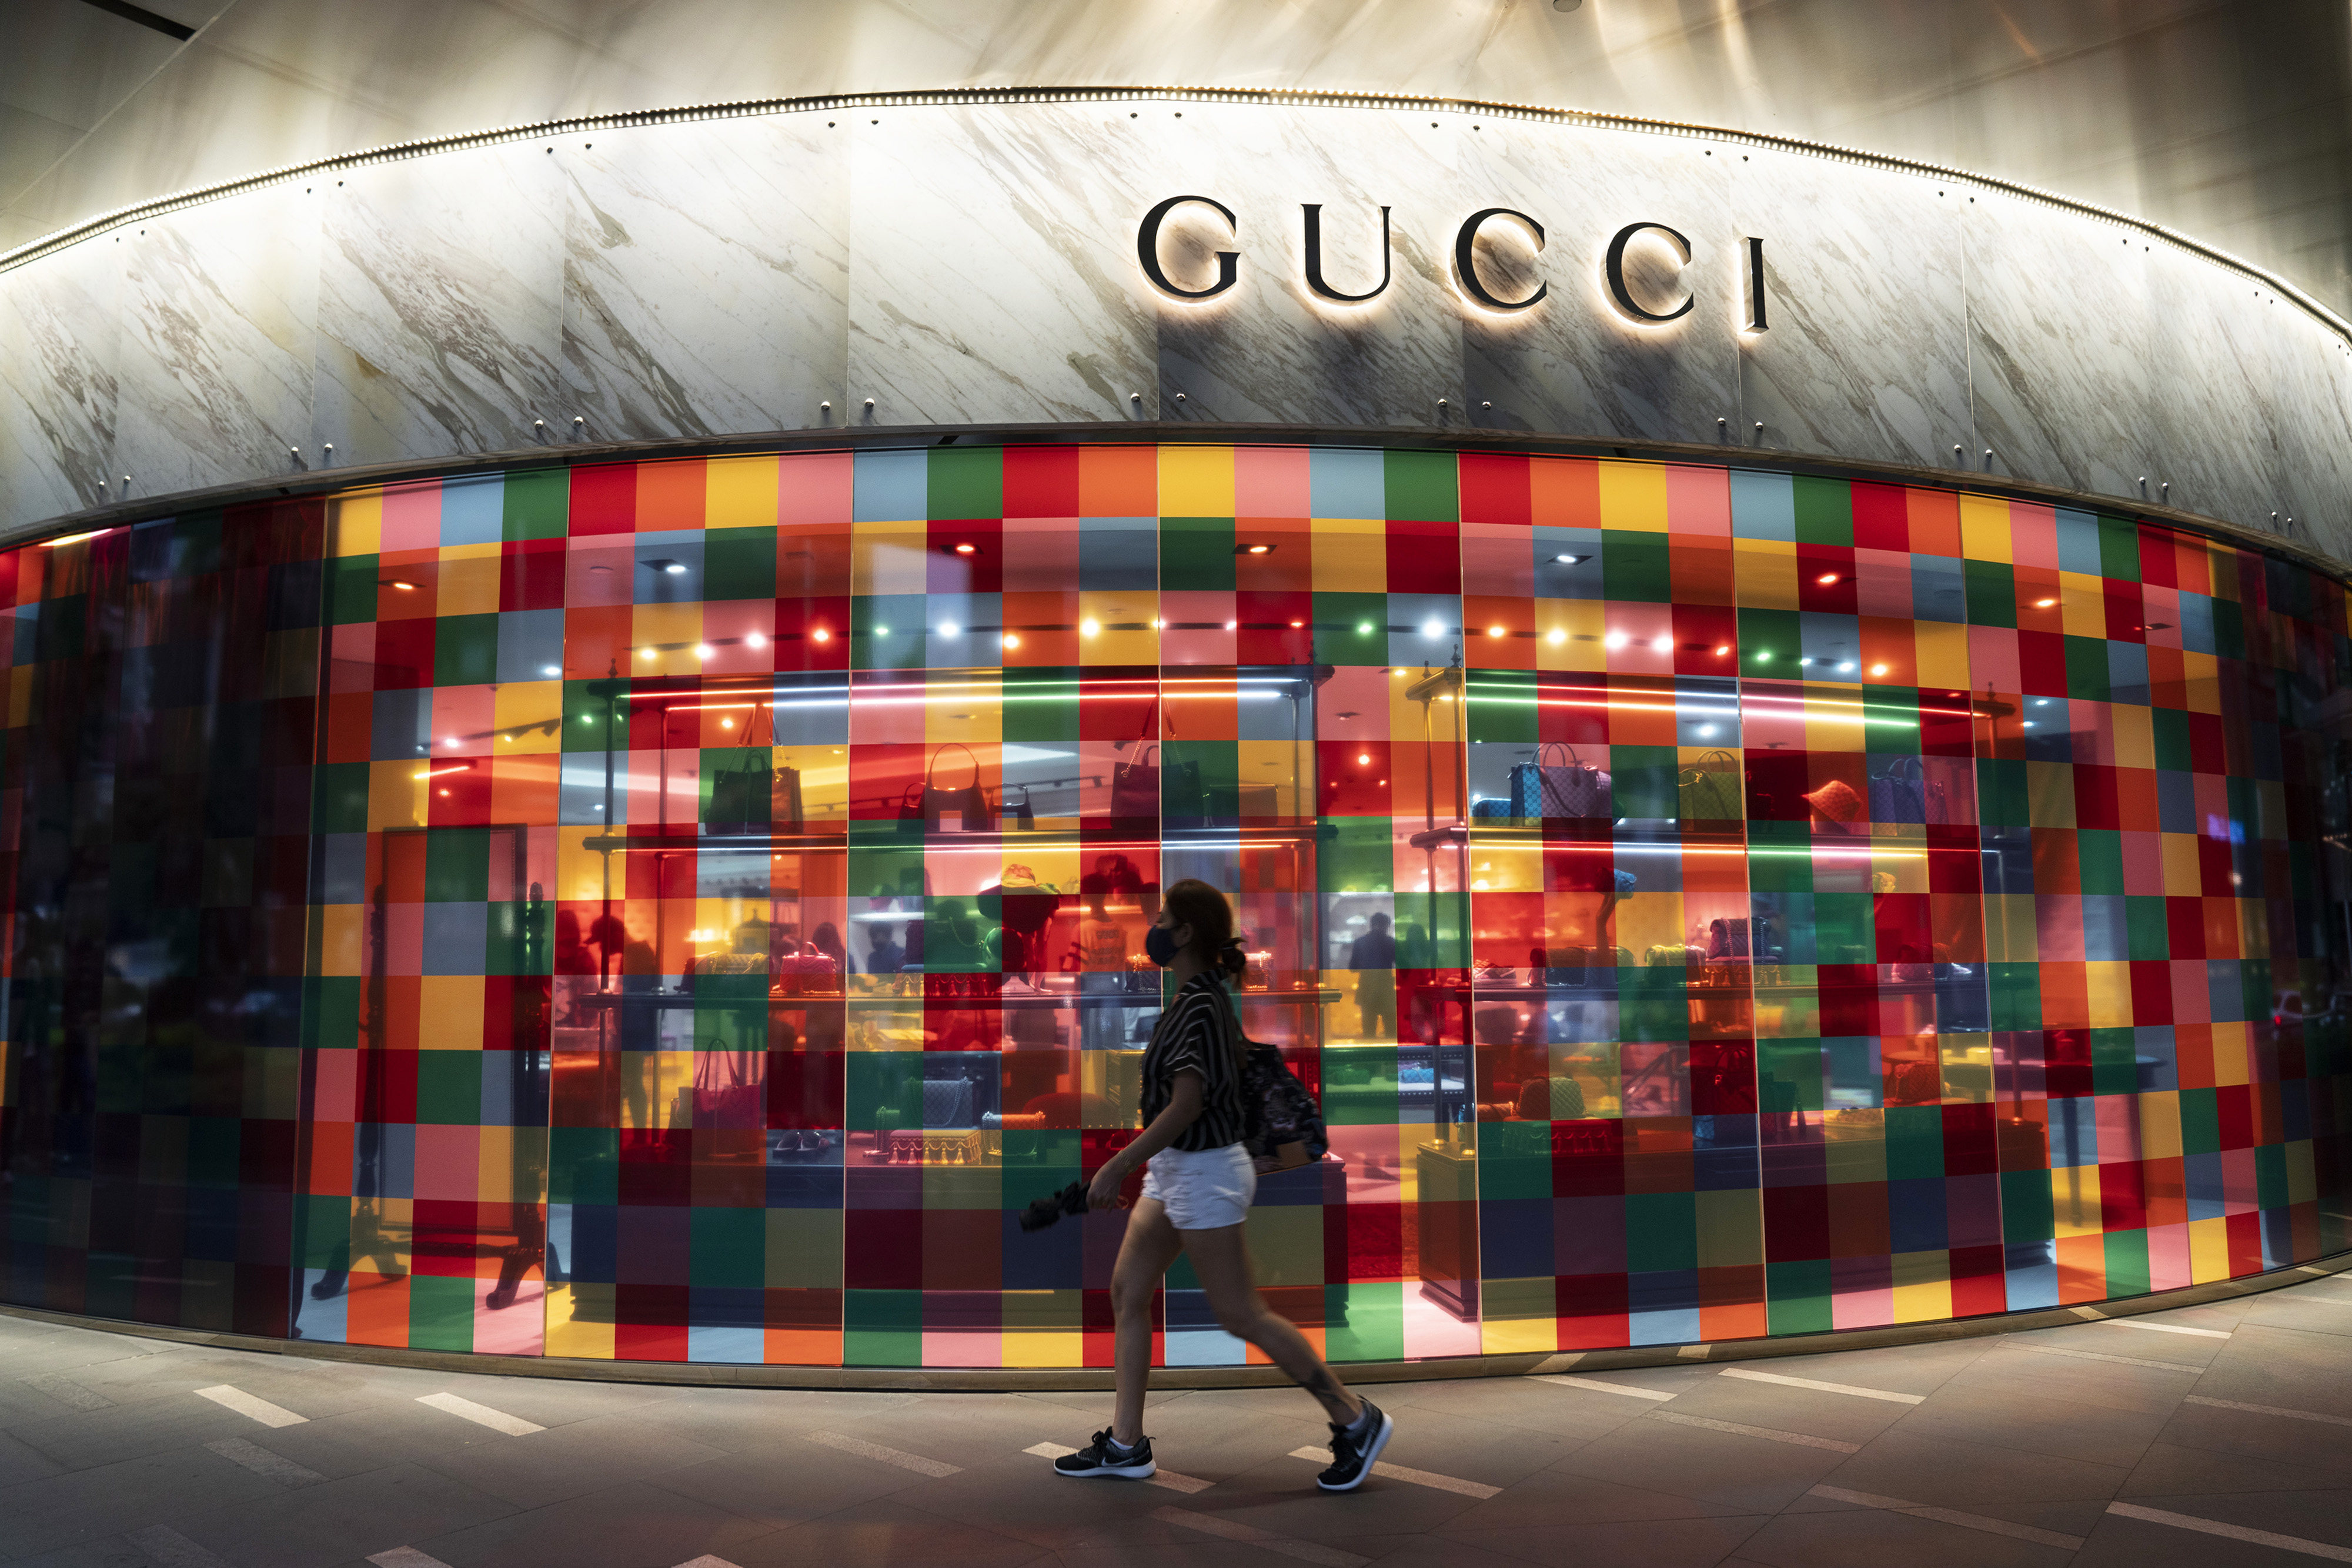 Gucci store in Miami, Florida